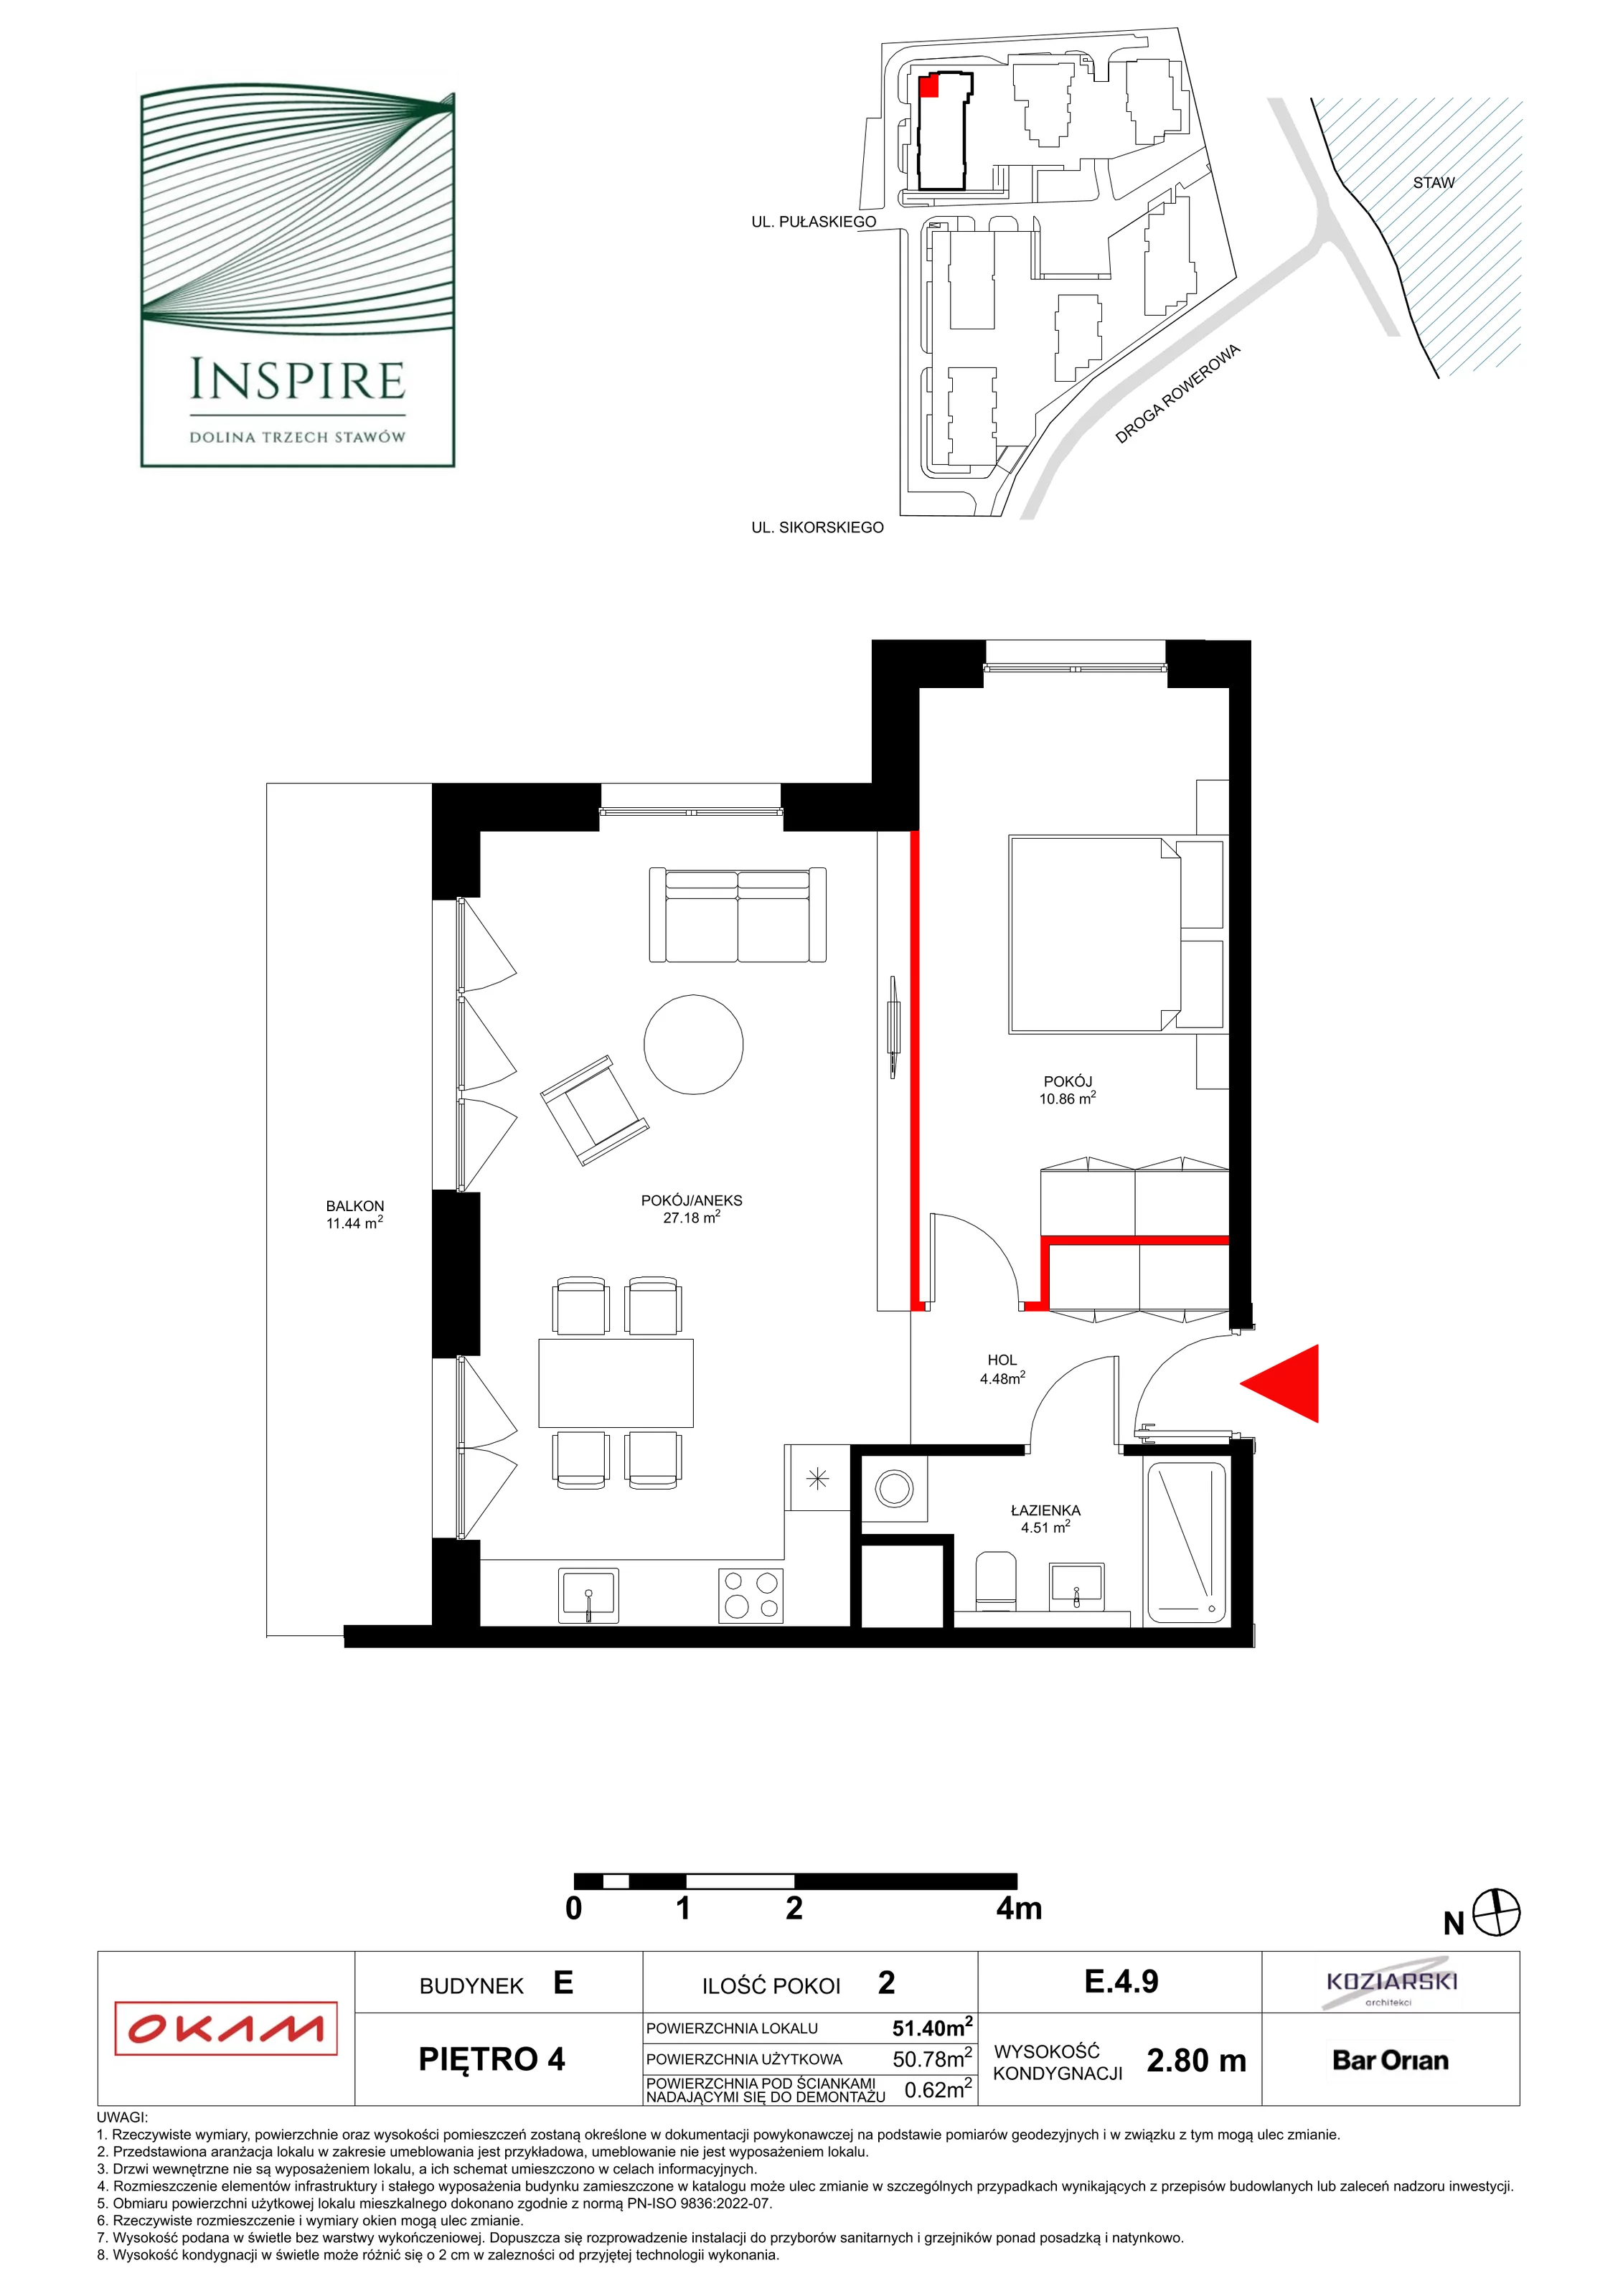 Apartament 50,78 m², piętro 4, oferta nr E.4.9, Inspire, Katowice, Osiedle Paderewskiego-Muchowiec, Dolina Trzech Stawów, ul. gen. Sikorskiego 41